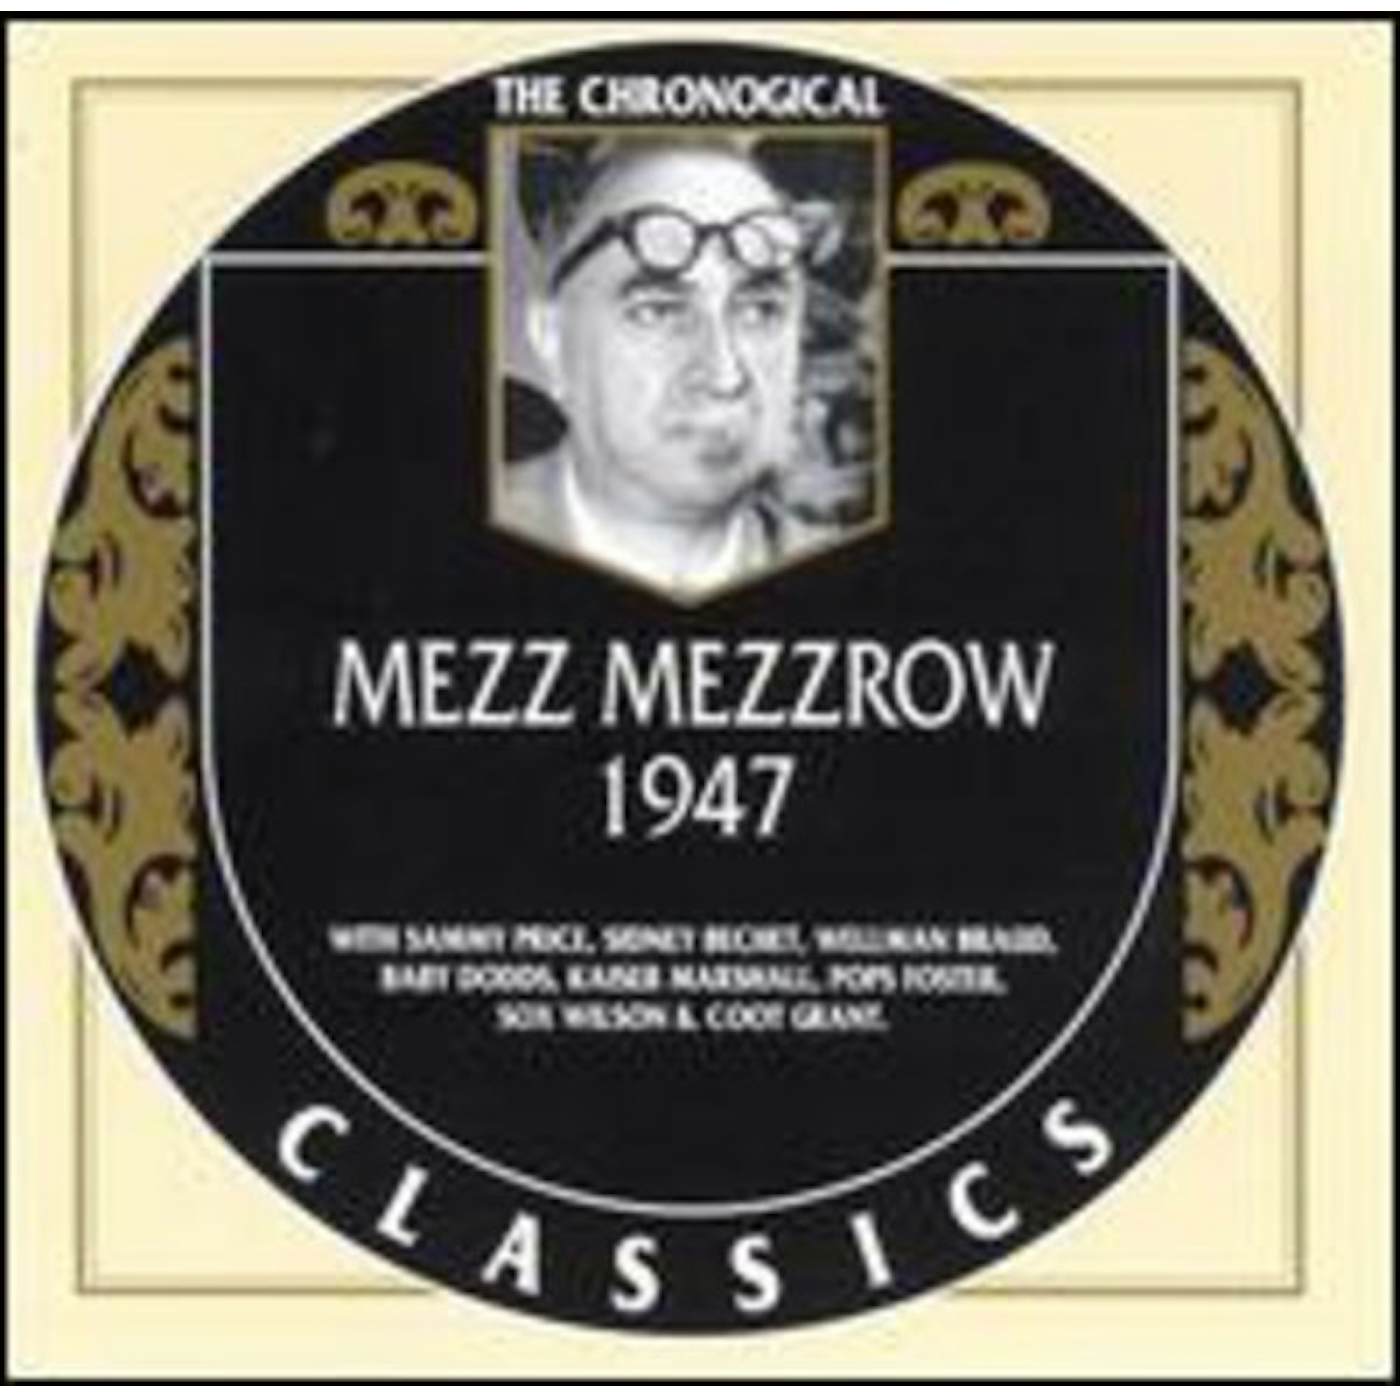 MEZZ MEZZROW 1947 CD